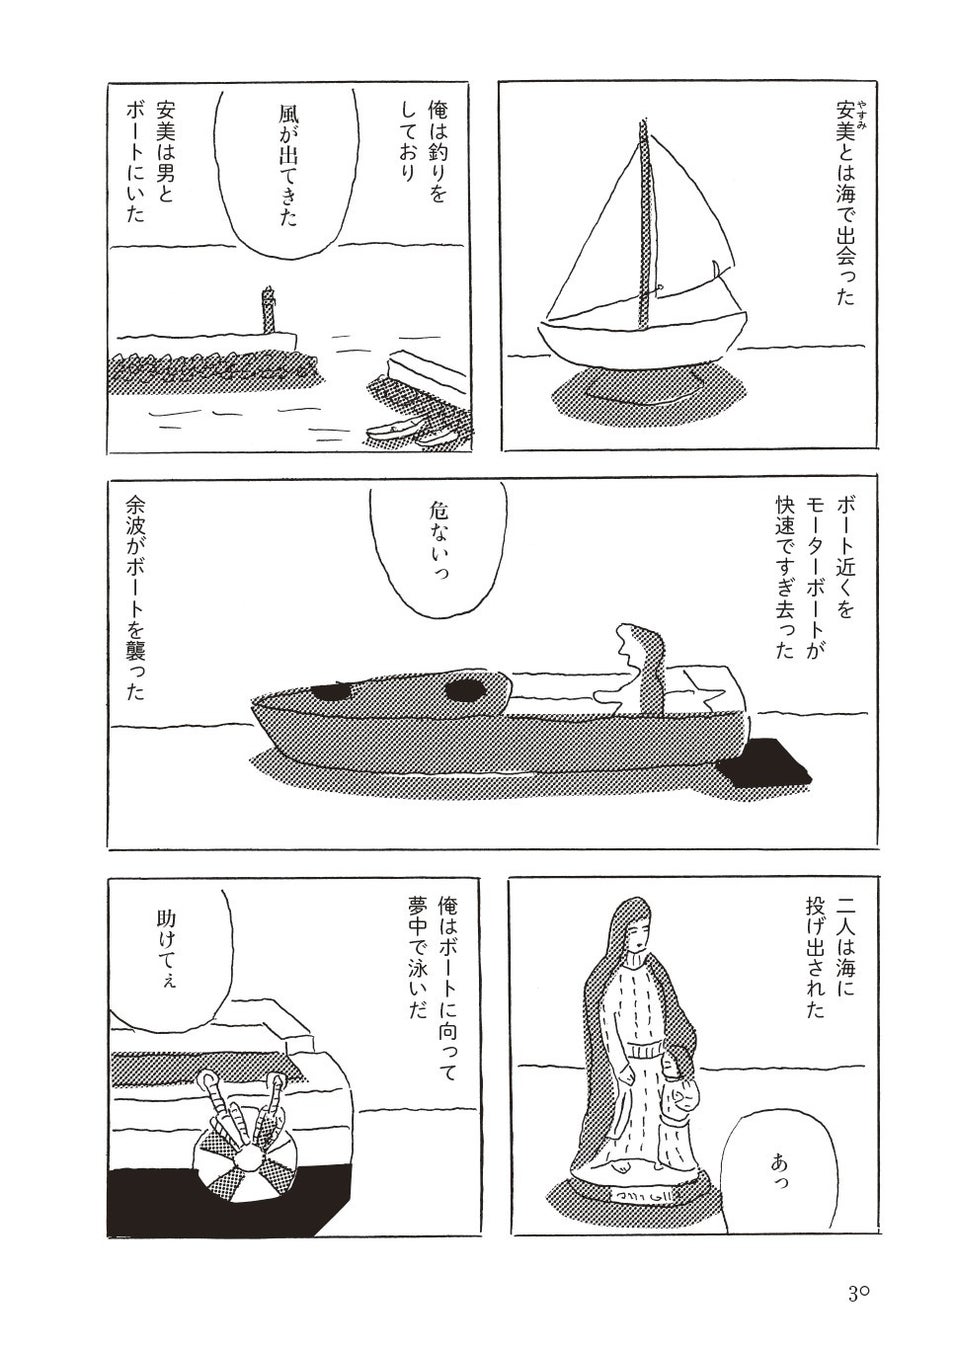 今なお愛され続ける個性的な才人・安西水丸さんが最後に遺した、ちょっとエロくて胸に染み入る抒情漫画集『陽だまり』が発売!!